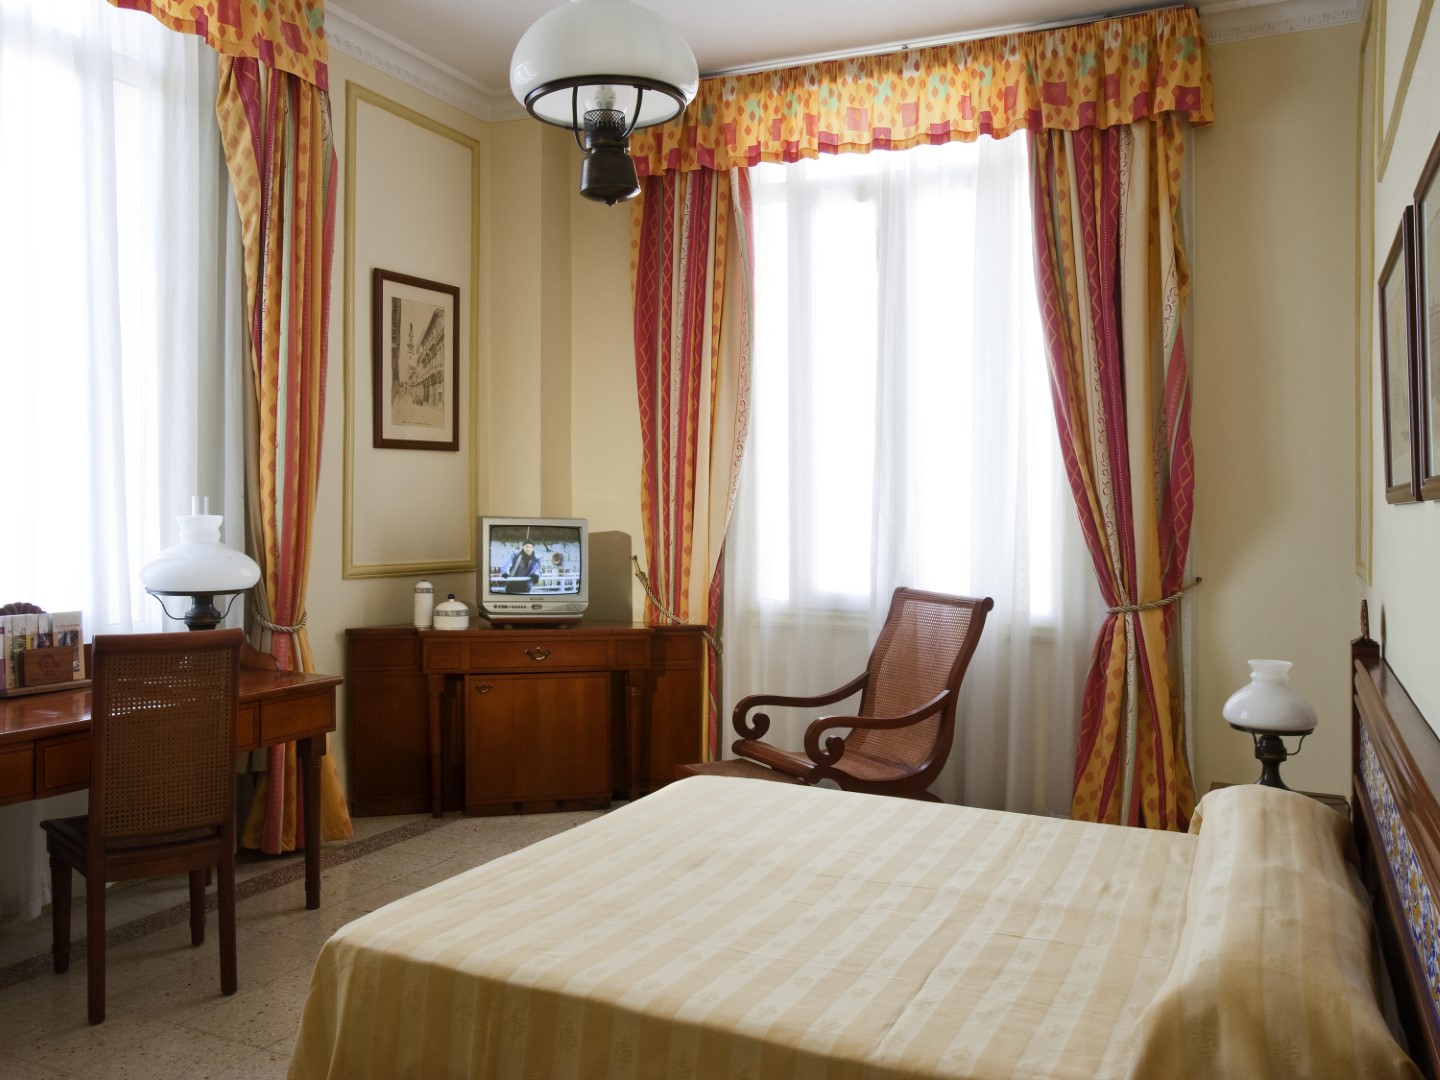 Superior room at Hotel Sevilla in Havana, Cuba